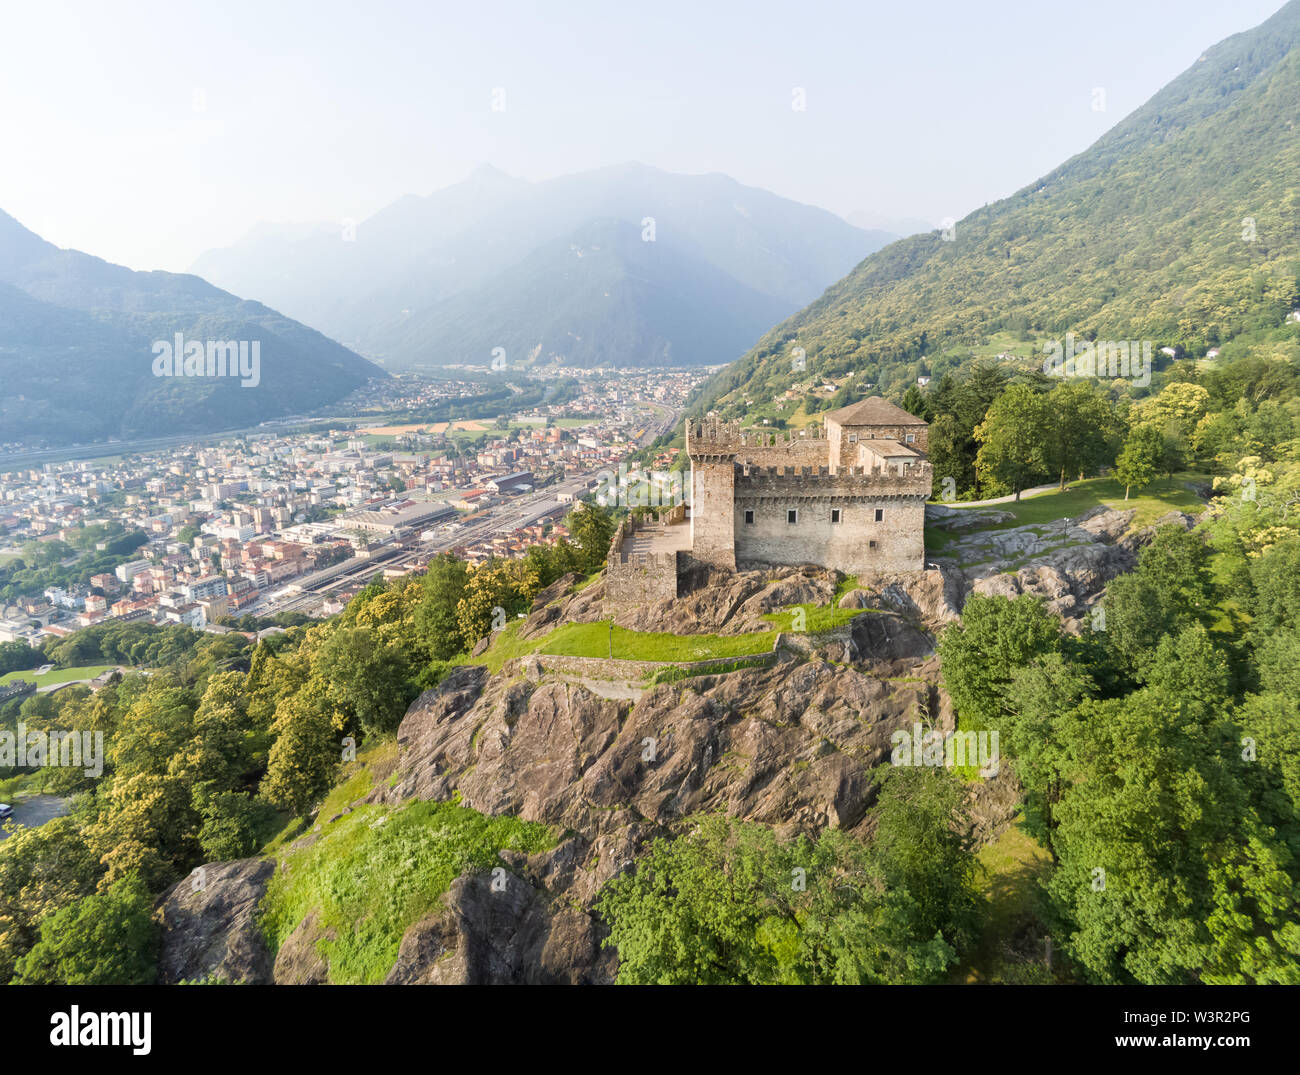 Vue aérienne du château de Sasso Corbaro, Bellinzona, Suisse Banque D'Images